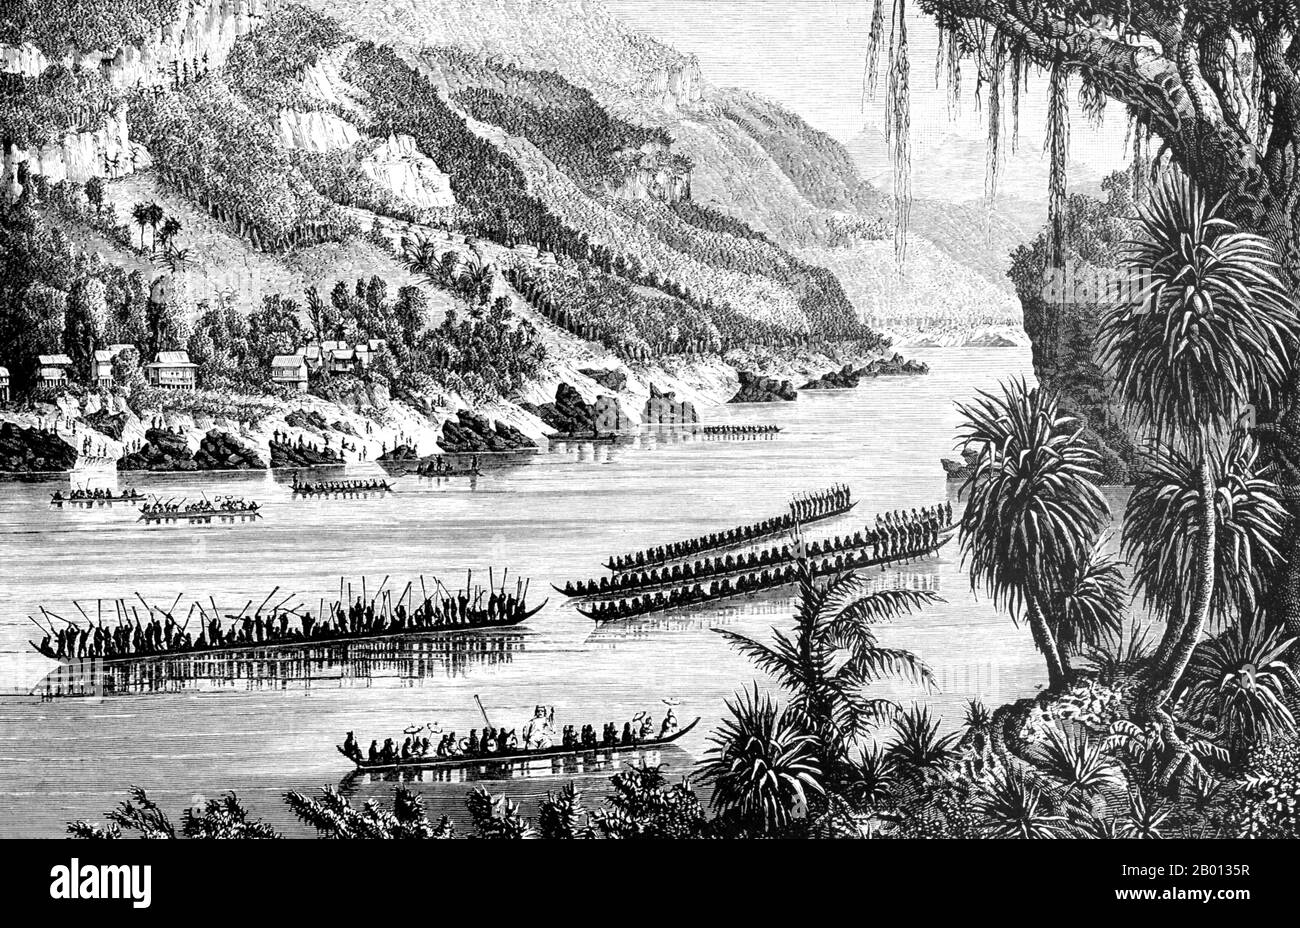 Cambodge: Courses de bateaux pirogue sur le Mékong. Gravure de Louis Delaporte (1842-1925), 1866-1868. Les récits de courses de pirogue en Indochine remontent à la période angkorienne où les Khmers sous le roi Jayavarman VII ont triomphé des Chams de Champa après une guerre navale prolongée (1177-81). Des années plus tard, les colons français ont assisté à des courses de bateaux qui sont considérées comme les précurseurs des courses de bateaux-dragons et de serpents de naga d'aujourd'hui. Aujourd'hui, chaque année en novembre, des millions de Cambodgiens descendent à Phnom Penh pour le festival de l'eau bon Om Tuk de trois jours, où le point culminant est les courses spectaculaires de bateaux. Banque D'Images